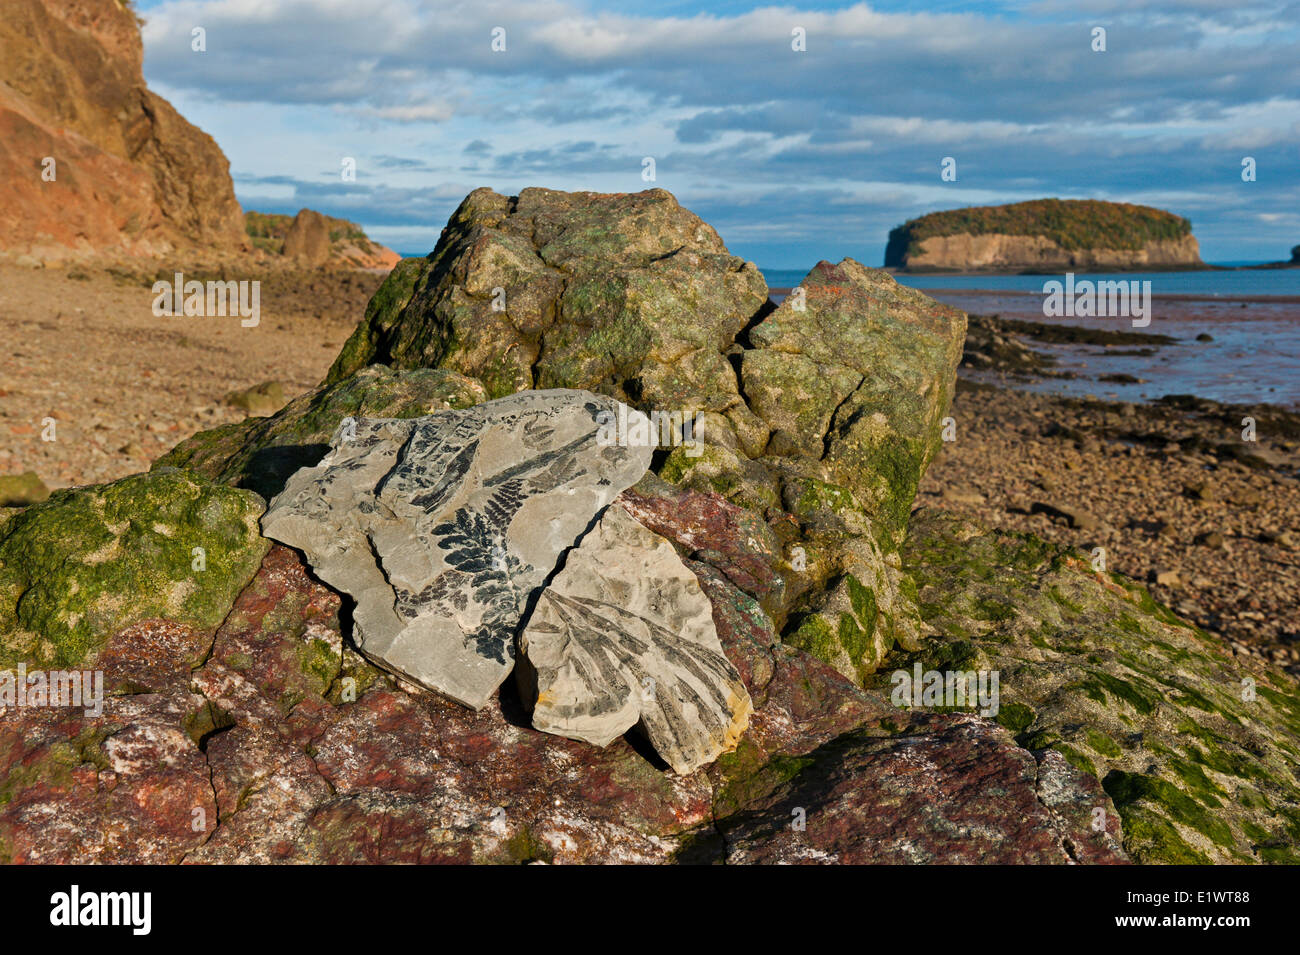 Le bassin de la baie de Fundy est l'un des plus riches gisements de fossiles de l'hémisphère occidental. Wasson Bluff, en Nouvelle-Écosse, Canada. Banque D'Images